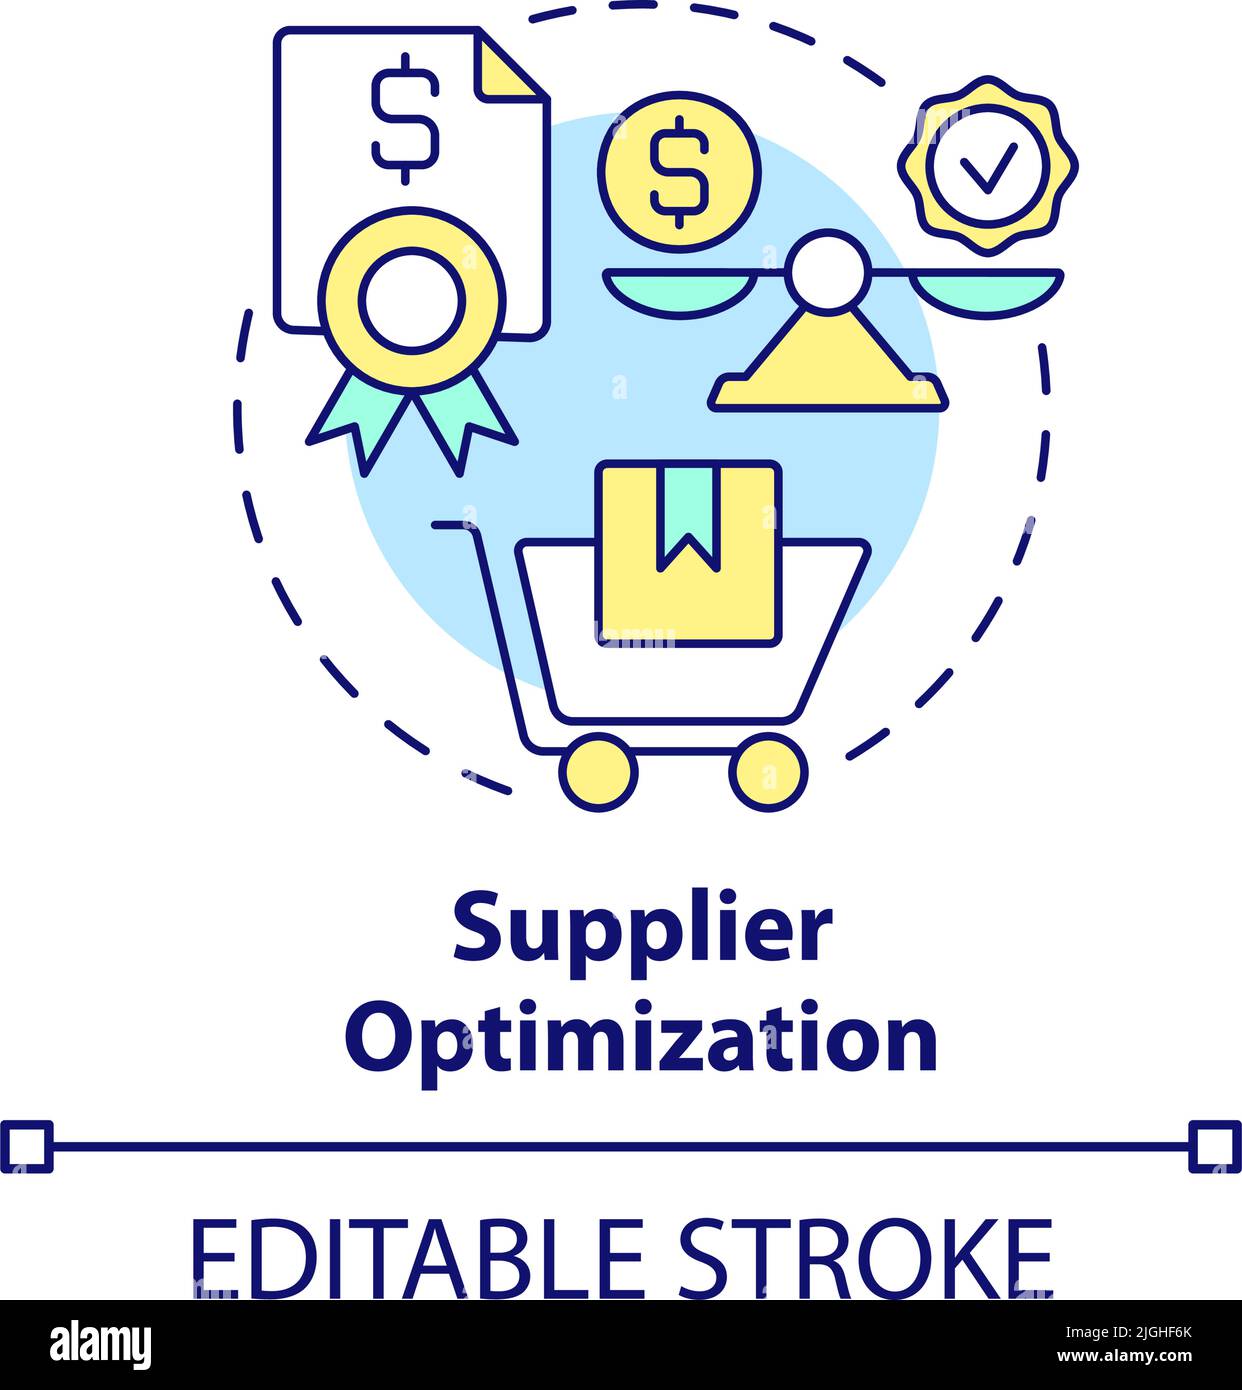 Supplier optimization concept icon Stock Vector